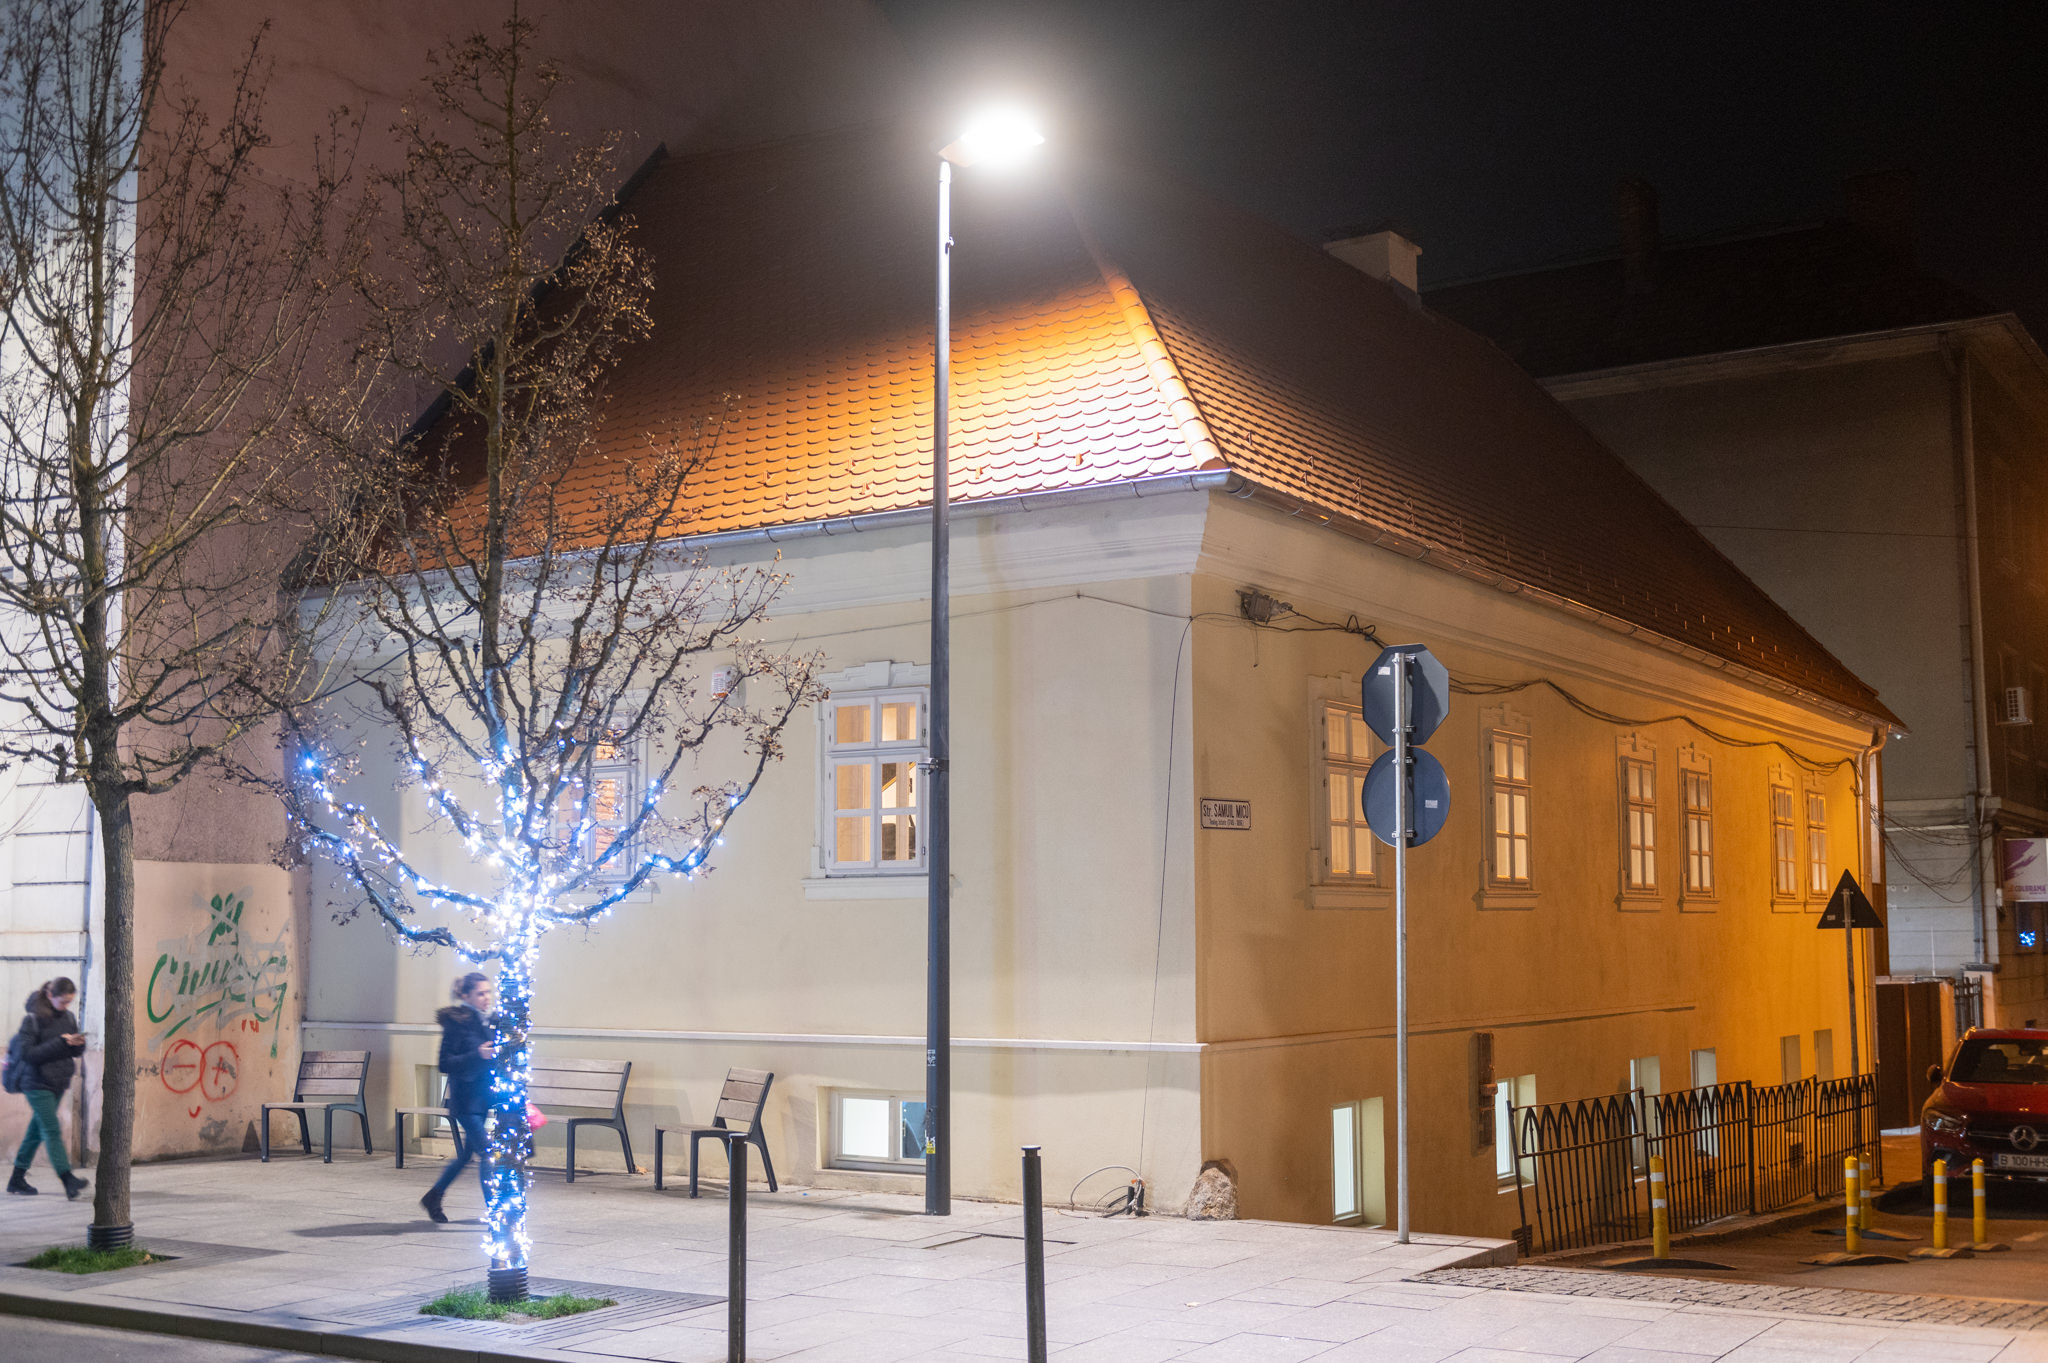 Musikliebhaber in Siebenbürgen erhalten ein Opernstudio als Weihnachtsgeschenk